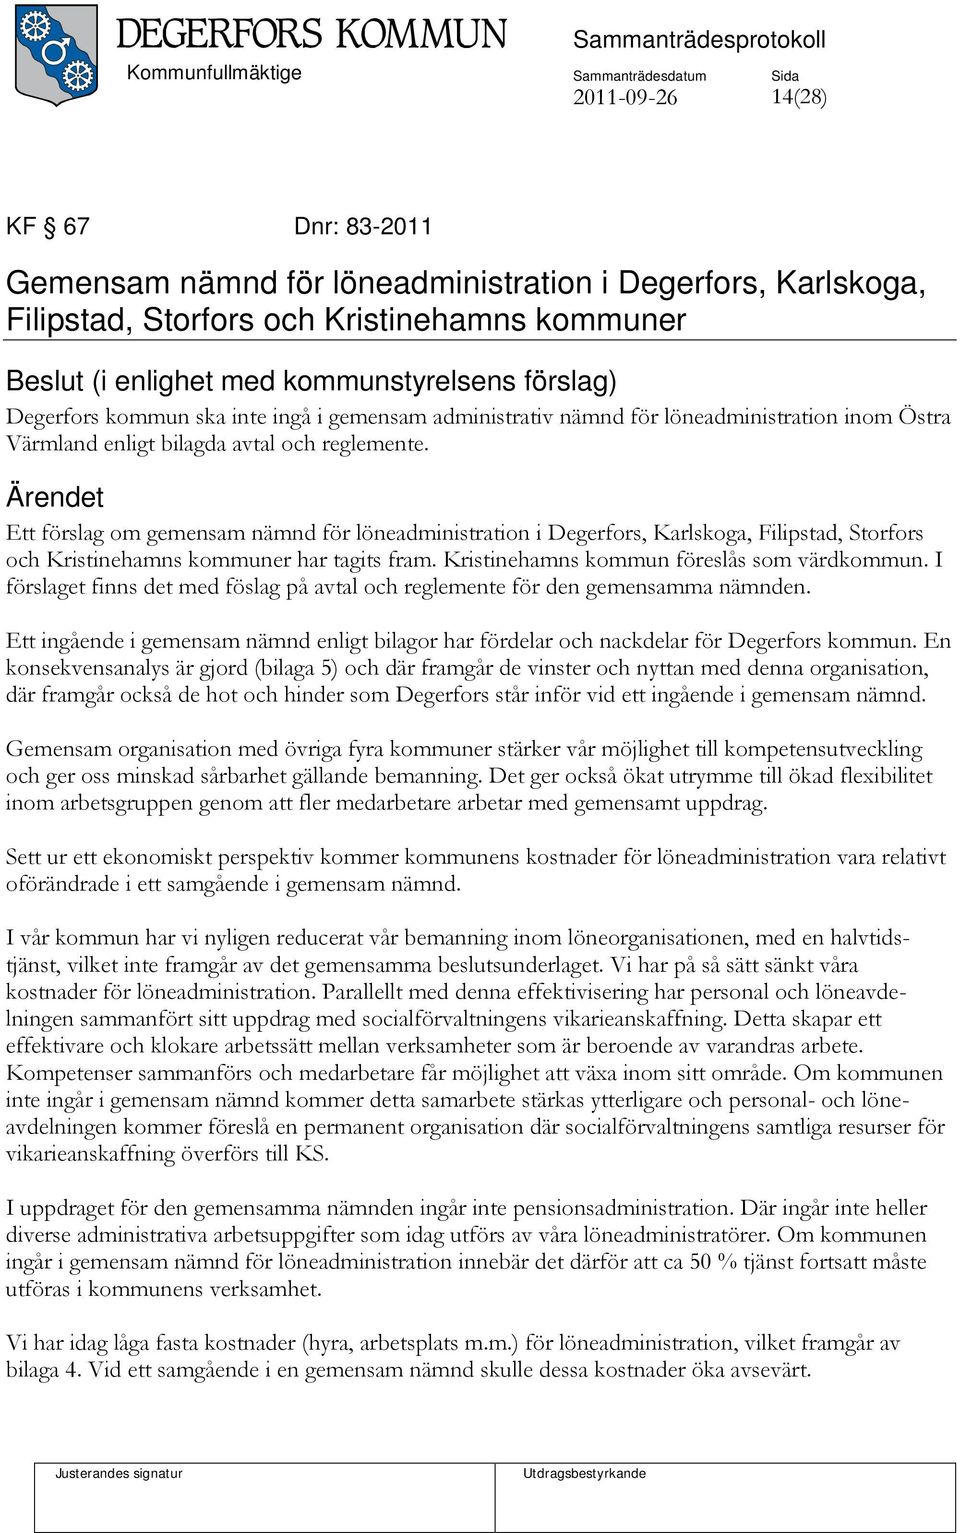 Ett förslag om gemensam nämnd för löneadministration i Degerfors, Karlskoga, Filipstad, Storfors och Kristinehamns kommuner har tagits fram. Kristinehamns kommun föreslås som värdkommun.